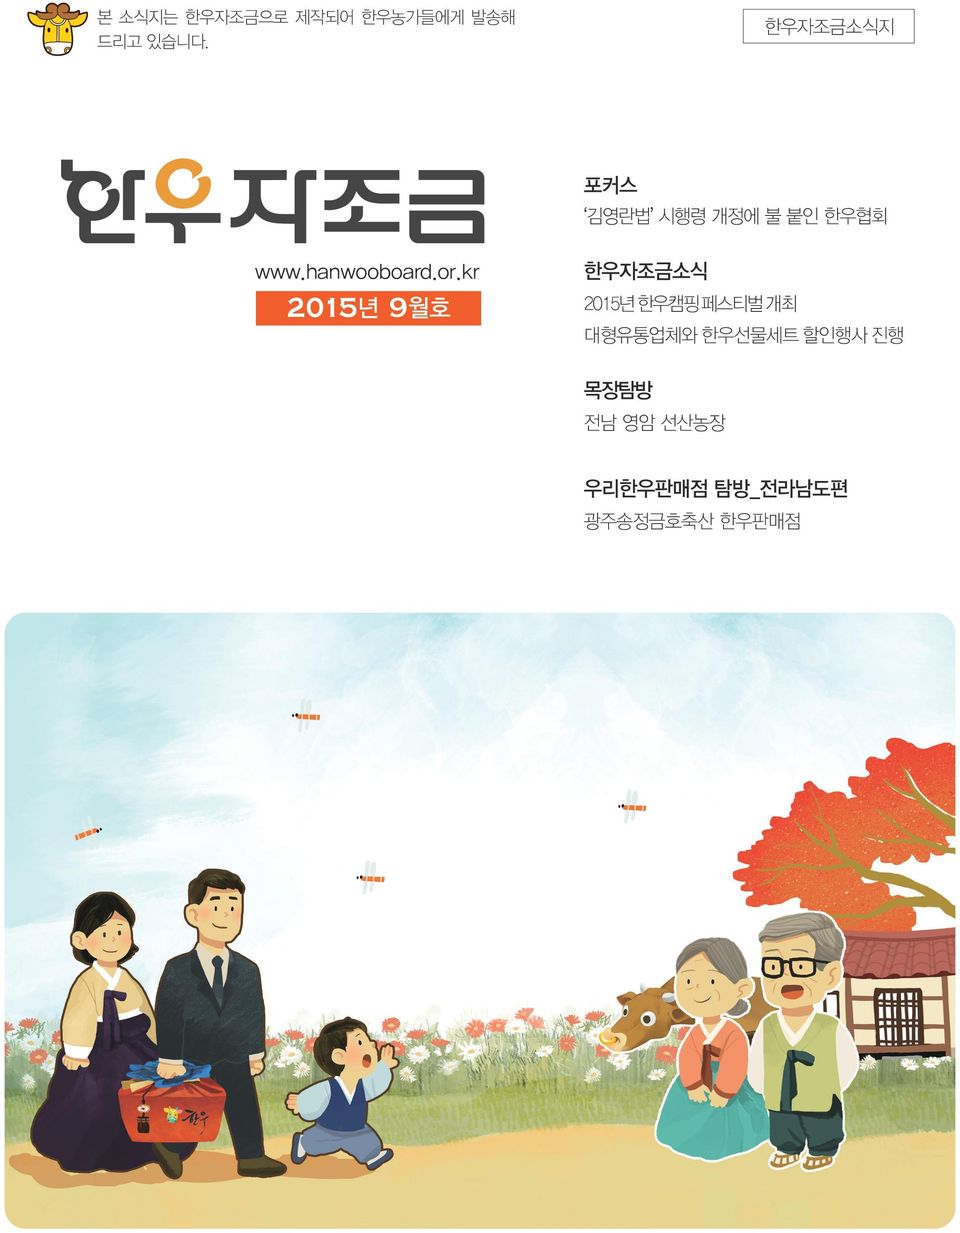 or.kr 2015년 9월호 한우자조금소식 2015년 한우캠핑 페스티벌 개최 대형유통업체와